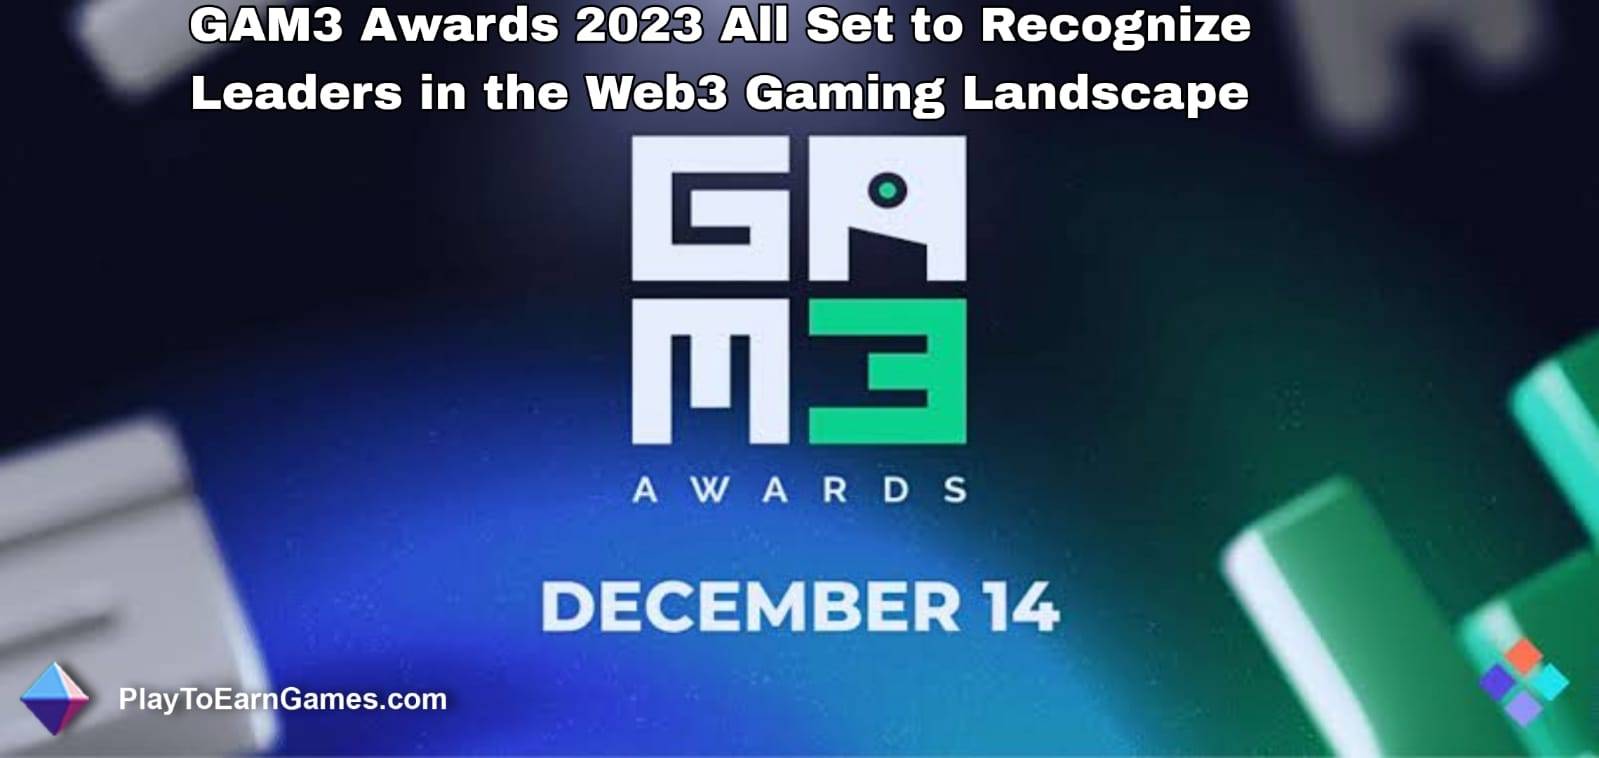 GAM3 अवार्ड्स 2023 वेब3 गेमिंग परिदृश्य में नेताओं को पहचानने के लिए पूरी तरह तैयार है